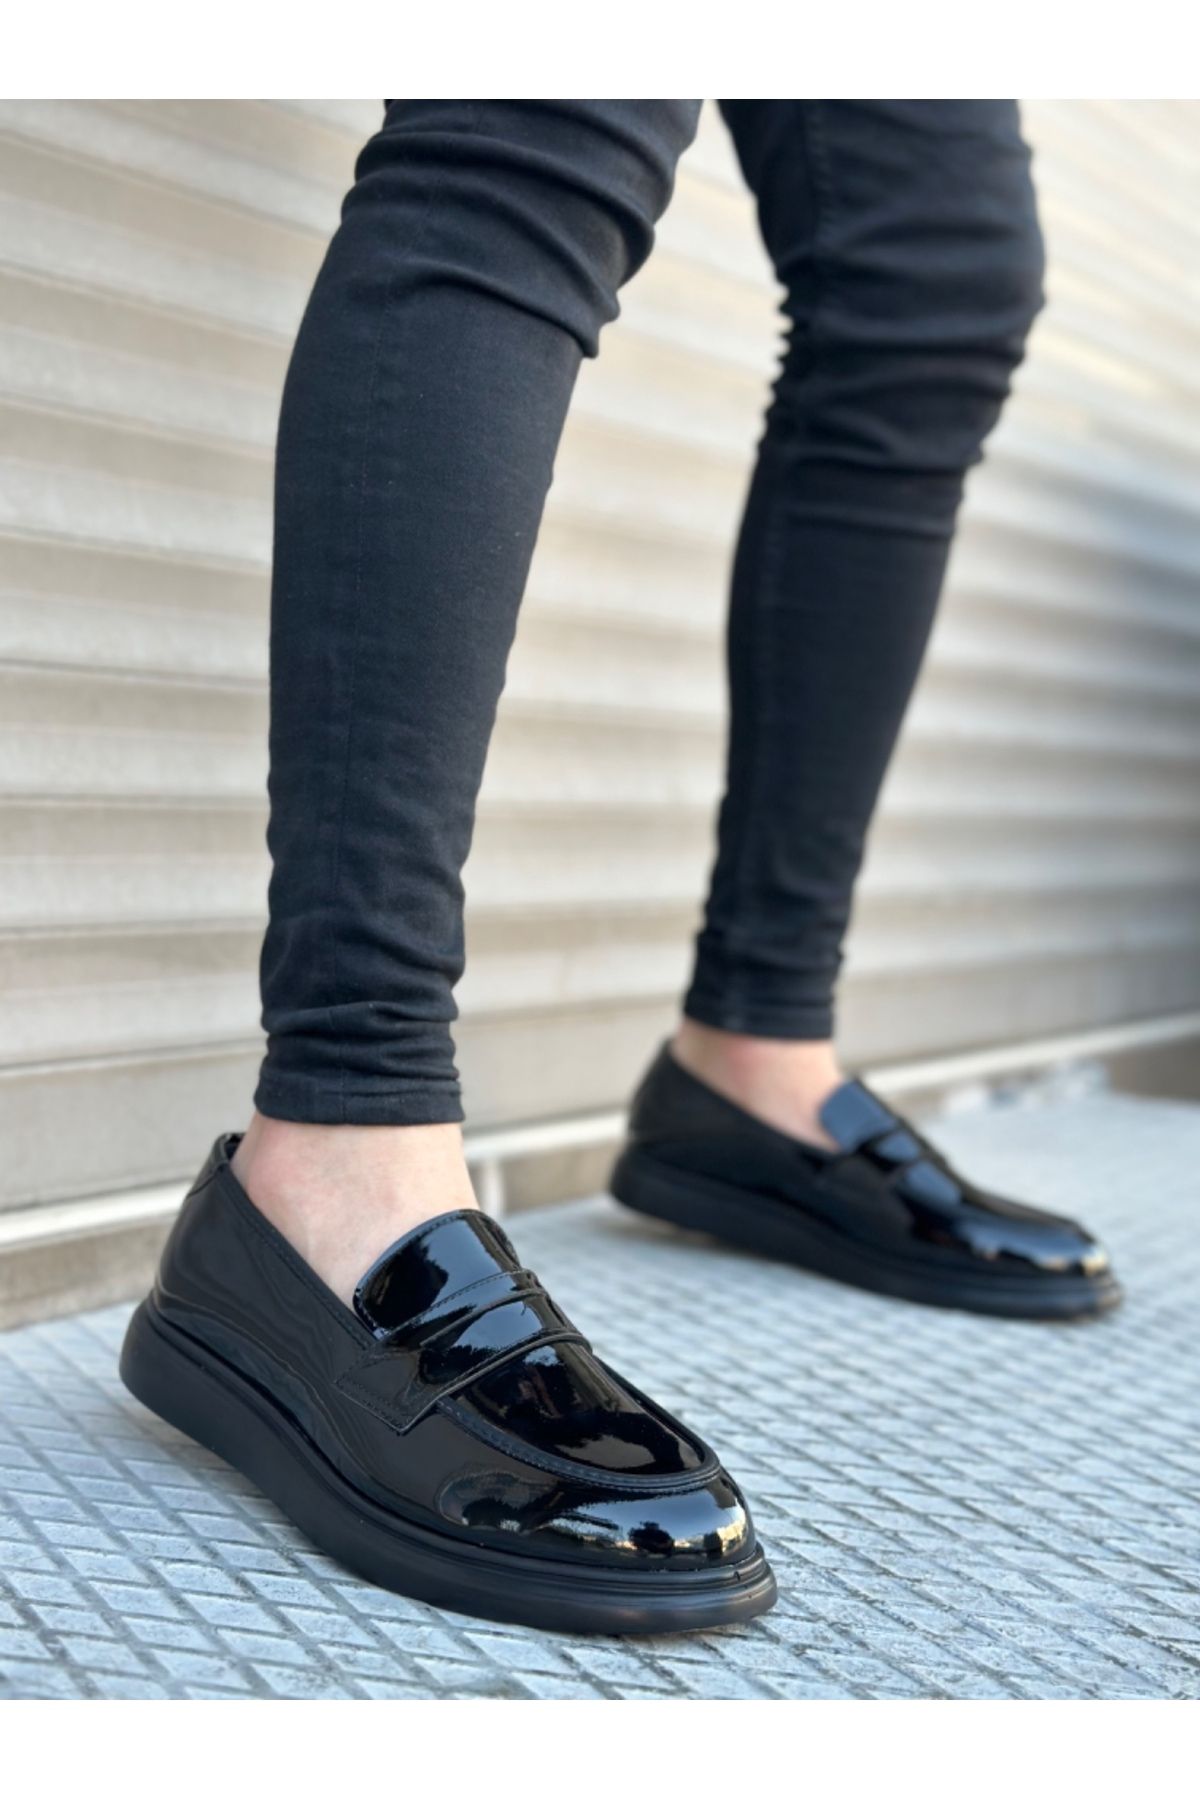 BOA Ba0316 Bağcıksız Yüksek Siyah Taban Klasik Rugan Corcik Erkek Ayakkabı